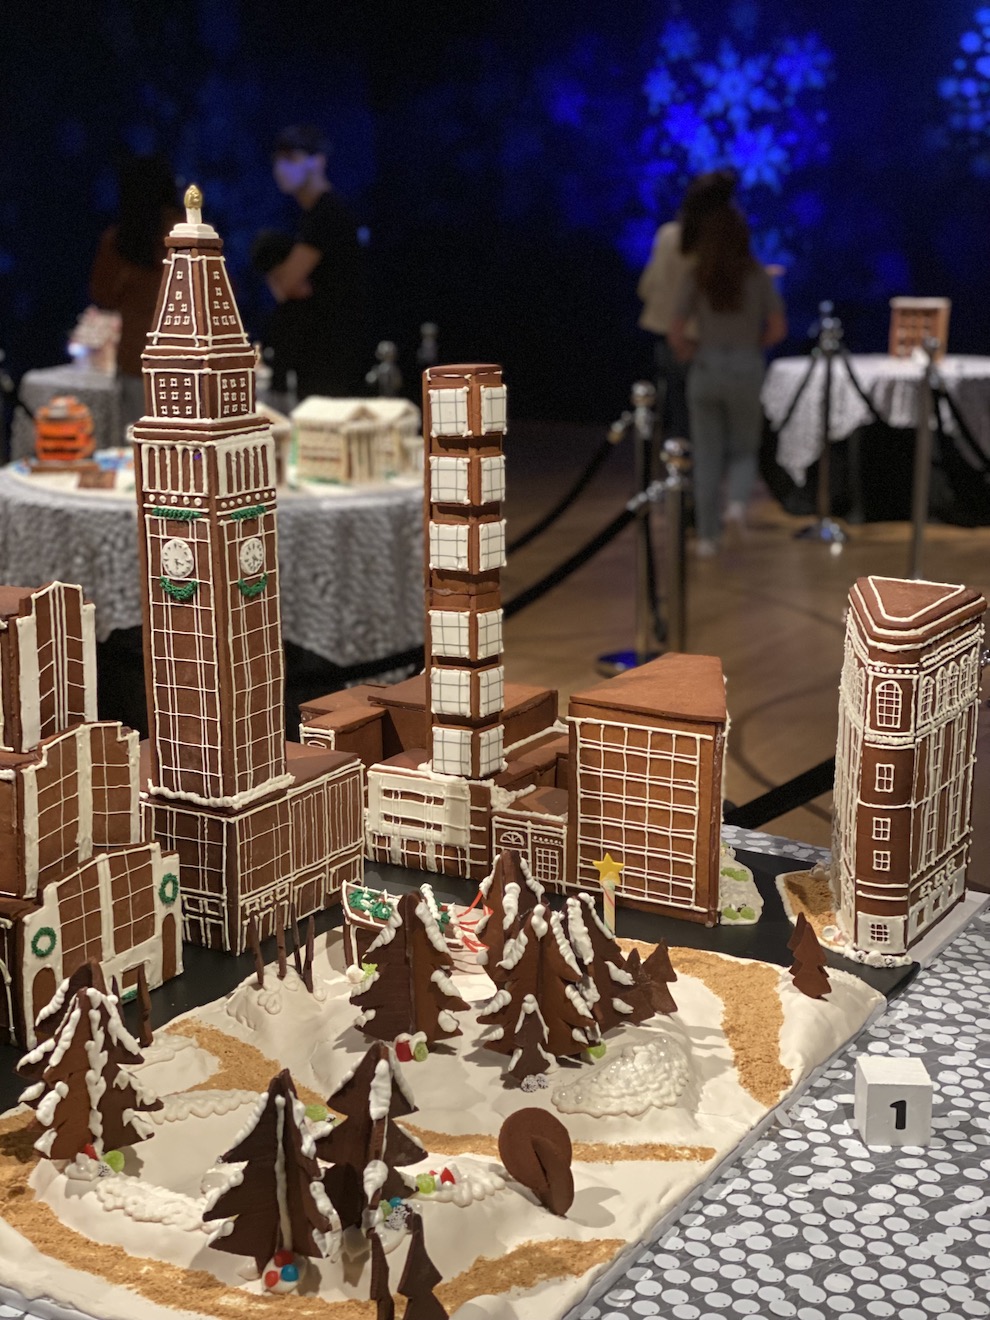 설치 작품 "Gingerbread NYC: Great Borough Bake-Off"(2022)의 출품작 중 하나인 매디슨 스퀘어 파크의 완성된 전시 모습.